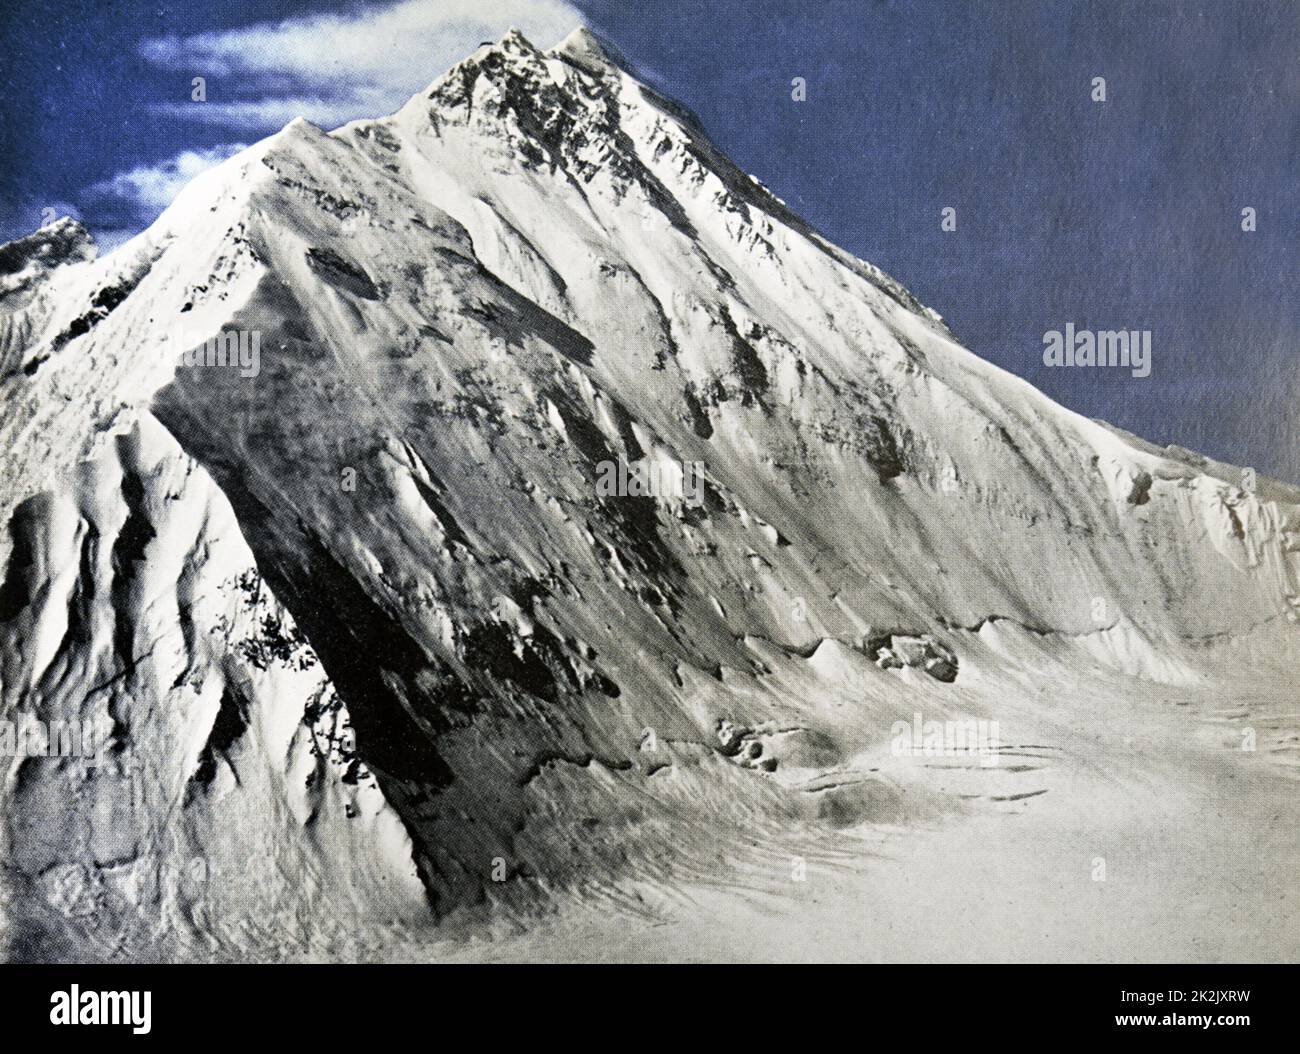 Fotografia a colori del lato nord dell'Everest. In data xx secolo Foto Stock